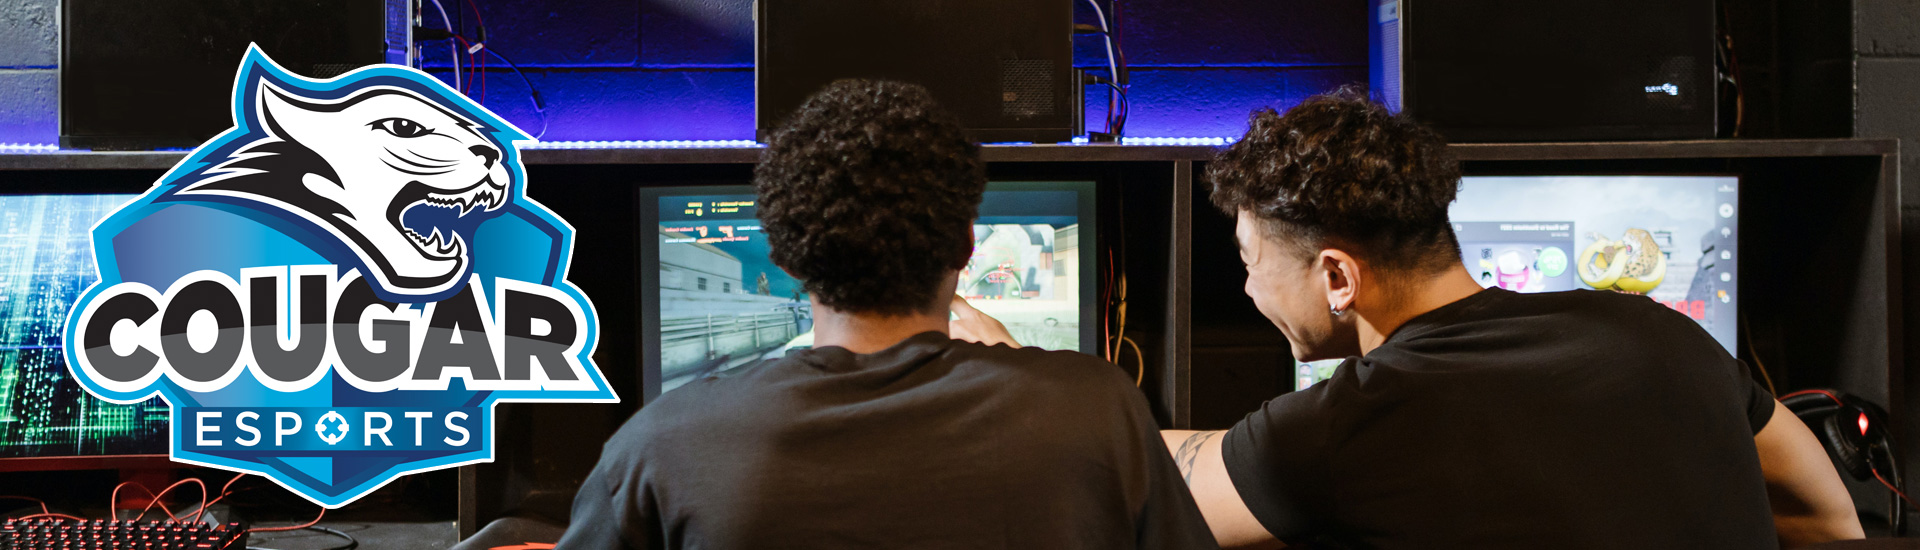 2 men playing video games